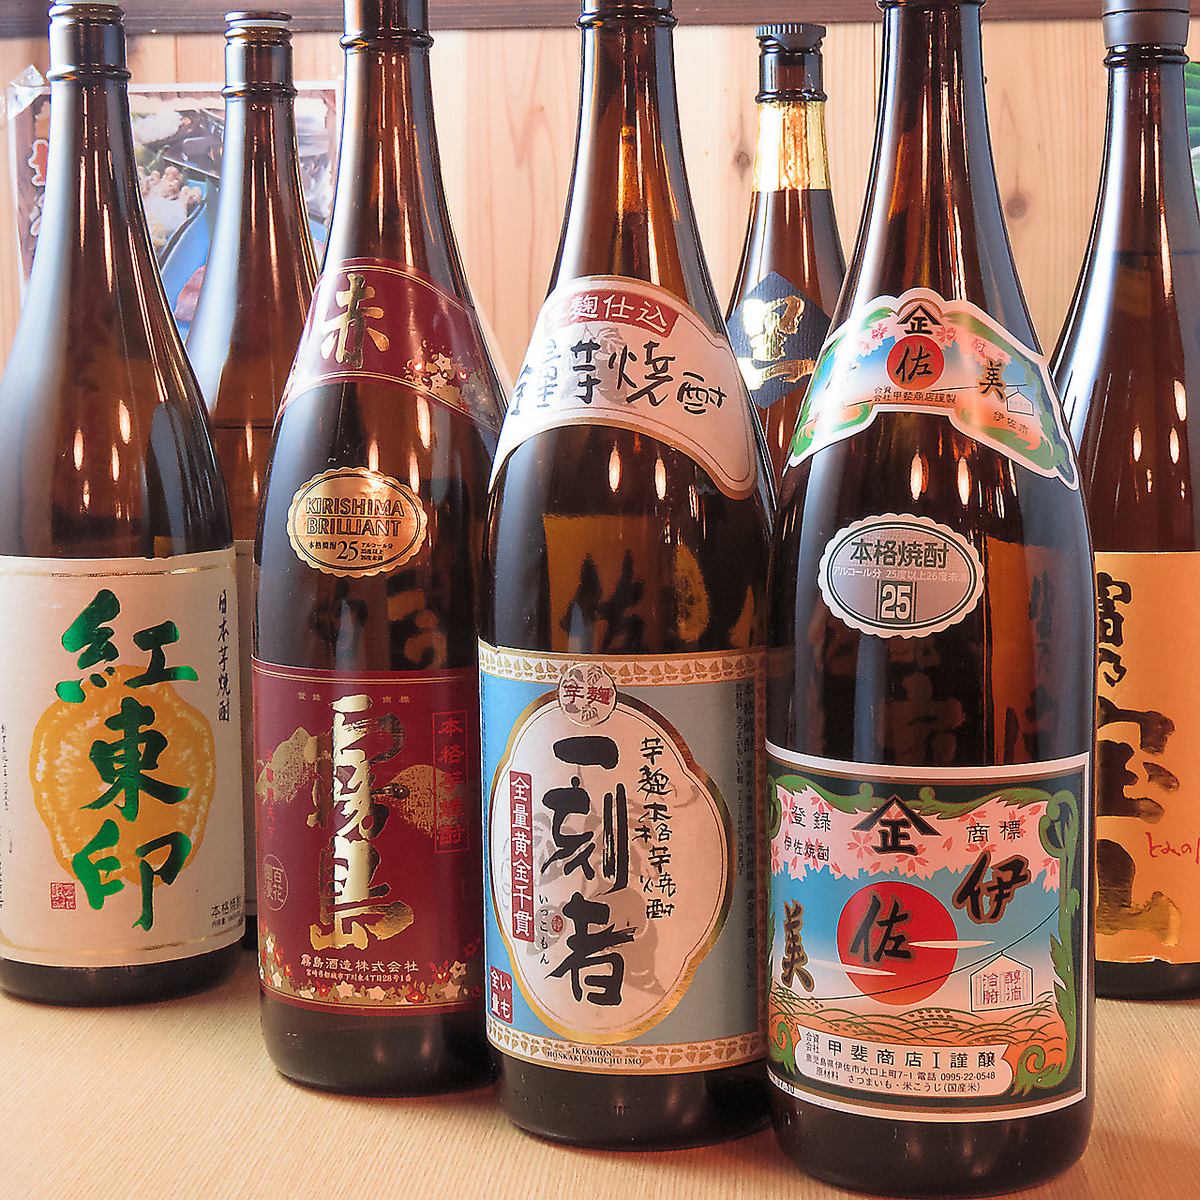 엄선 된 일본 술 · 민속주 등 모든 음료를 원가로 즐길 수 있습니다